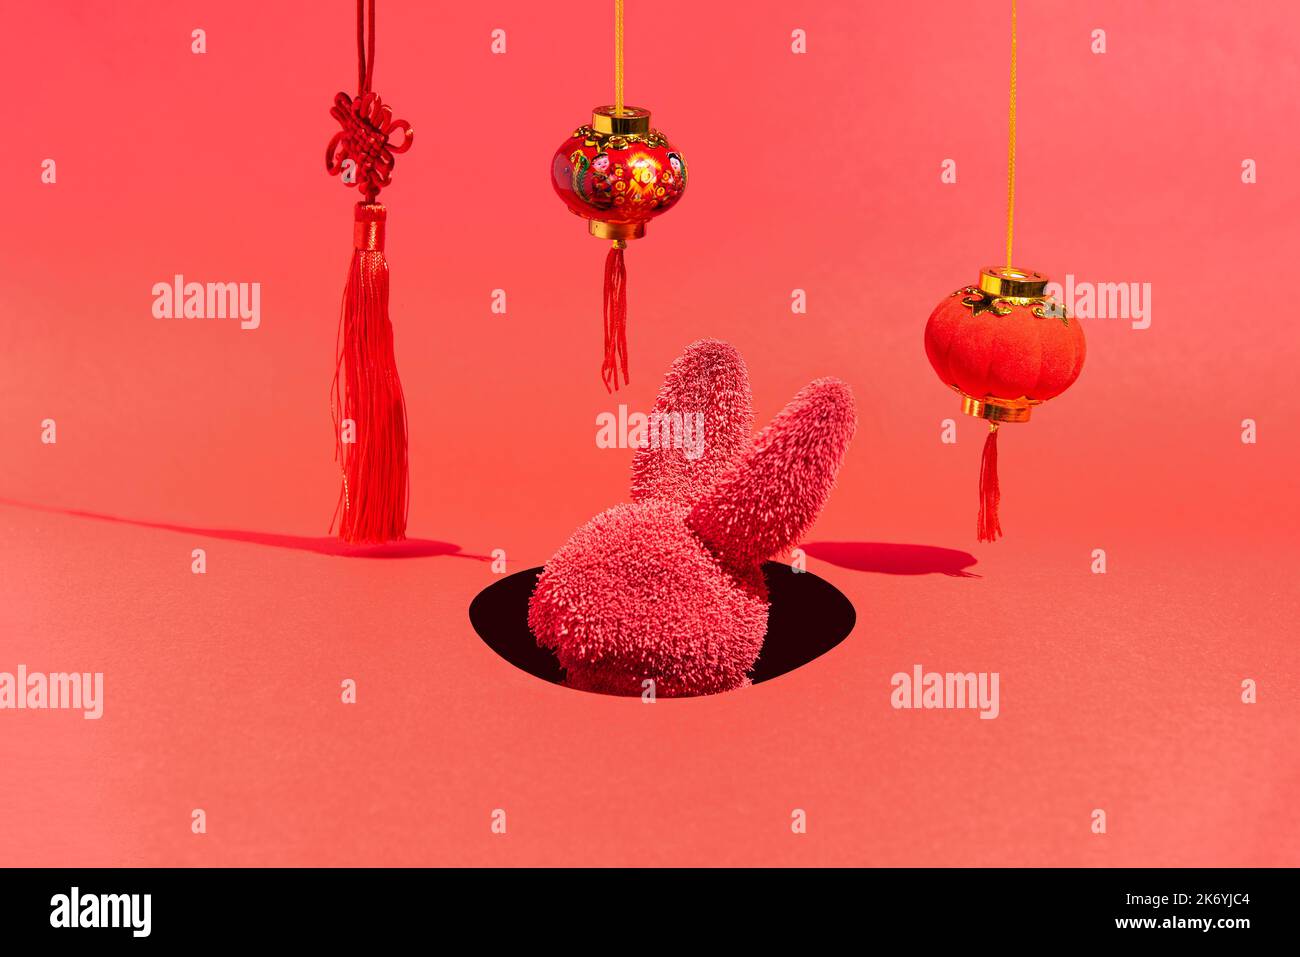 Un lapin rouge dans un trou entouré de décorations du nouvel an sur un fond rouge. Lapin chinois nouvel an. Présentation isométrique. Concept abstrait minimal. Banque D'Images